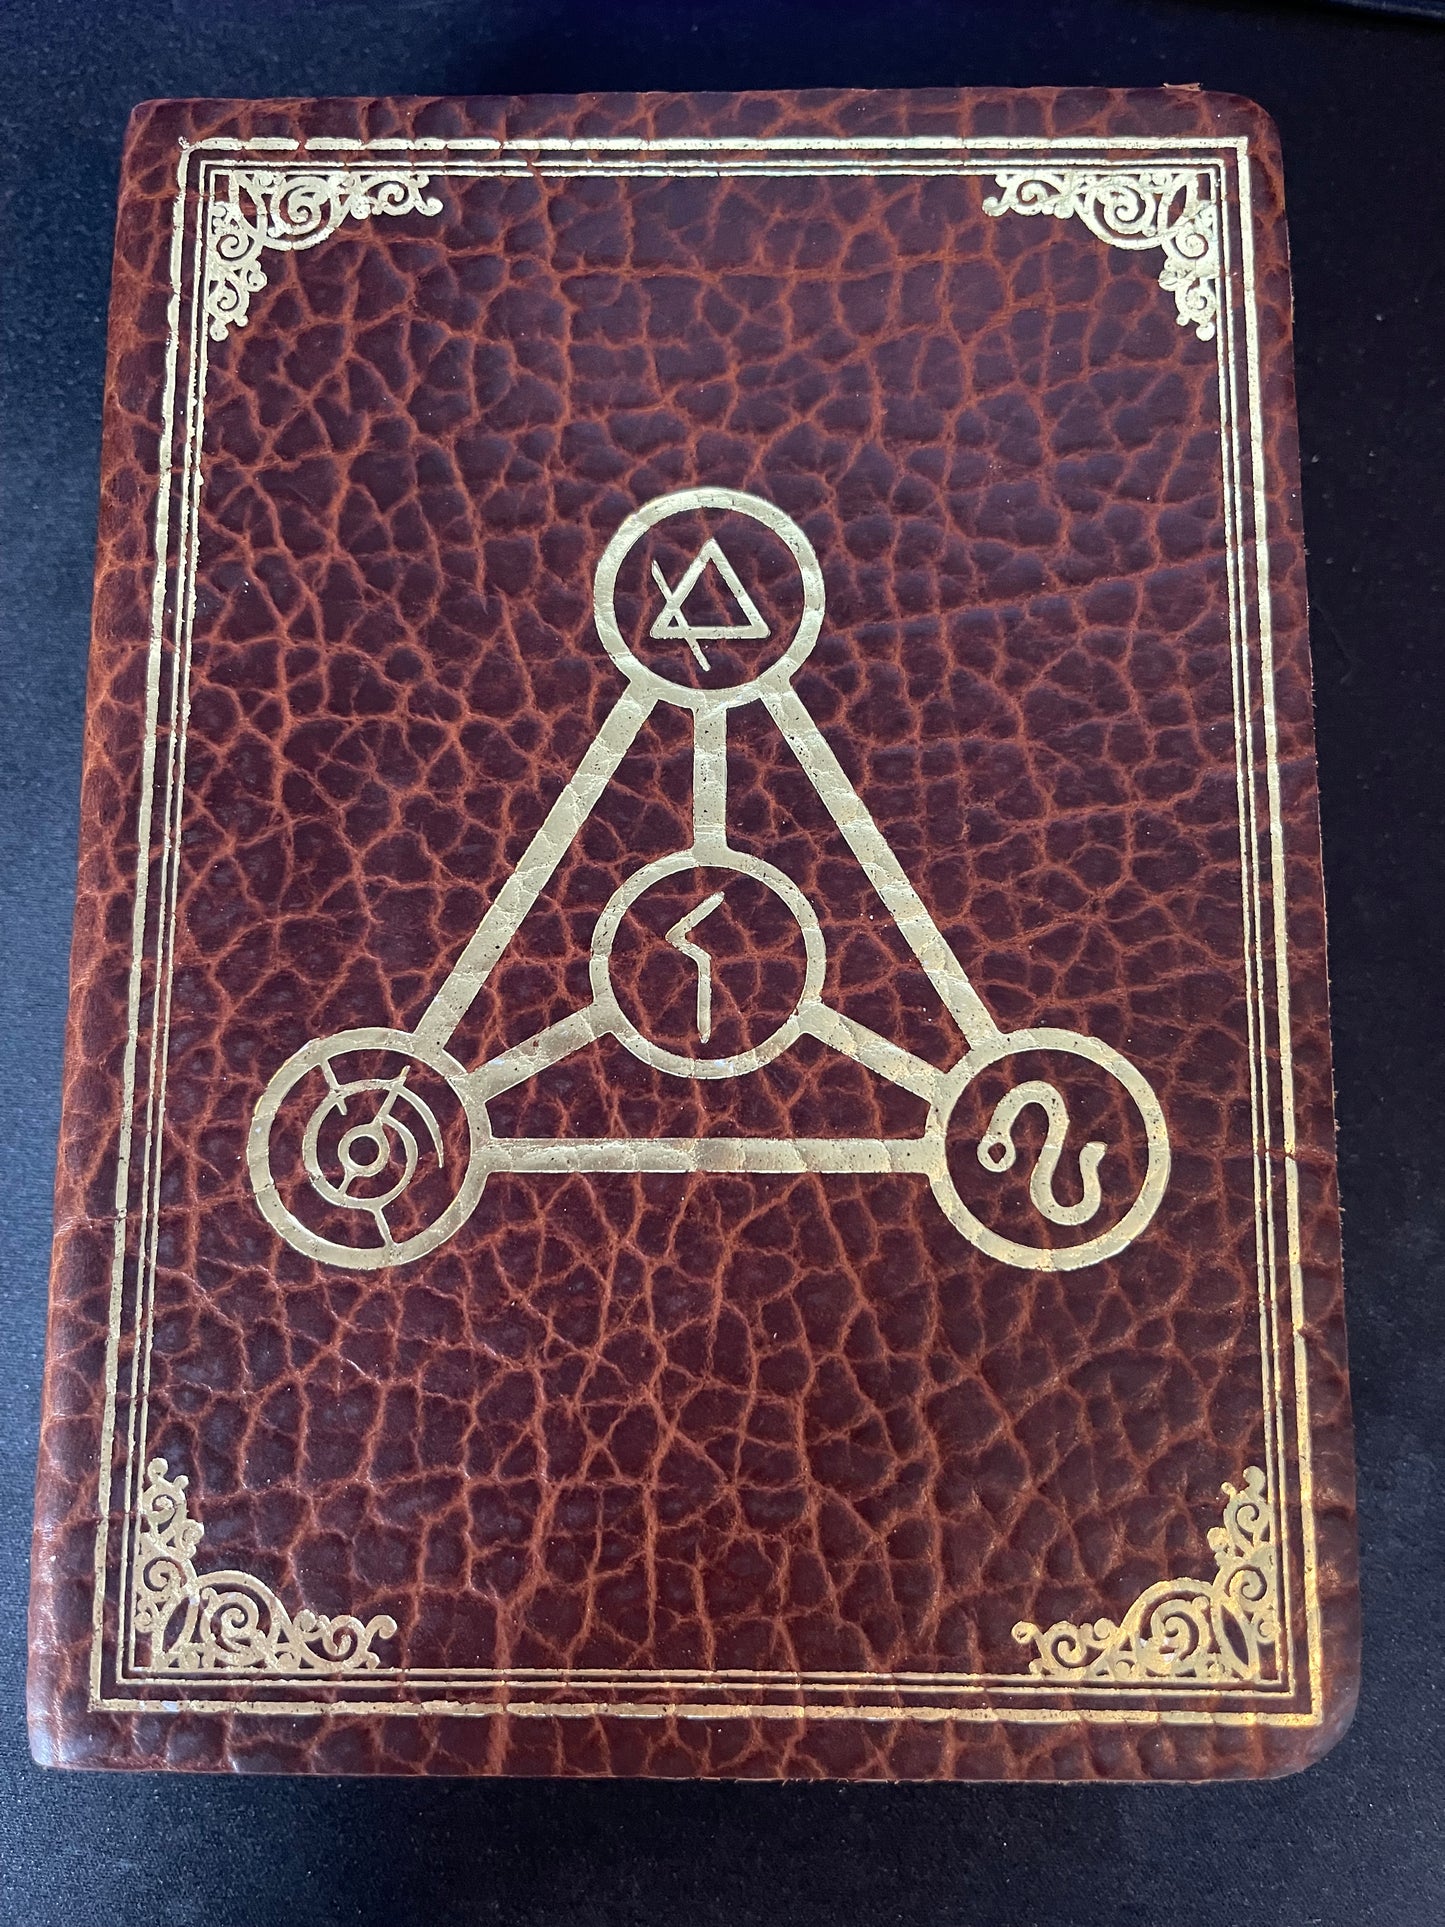 Spellbook by Elderwood Academy